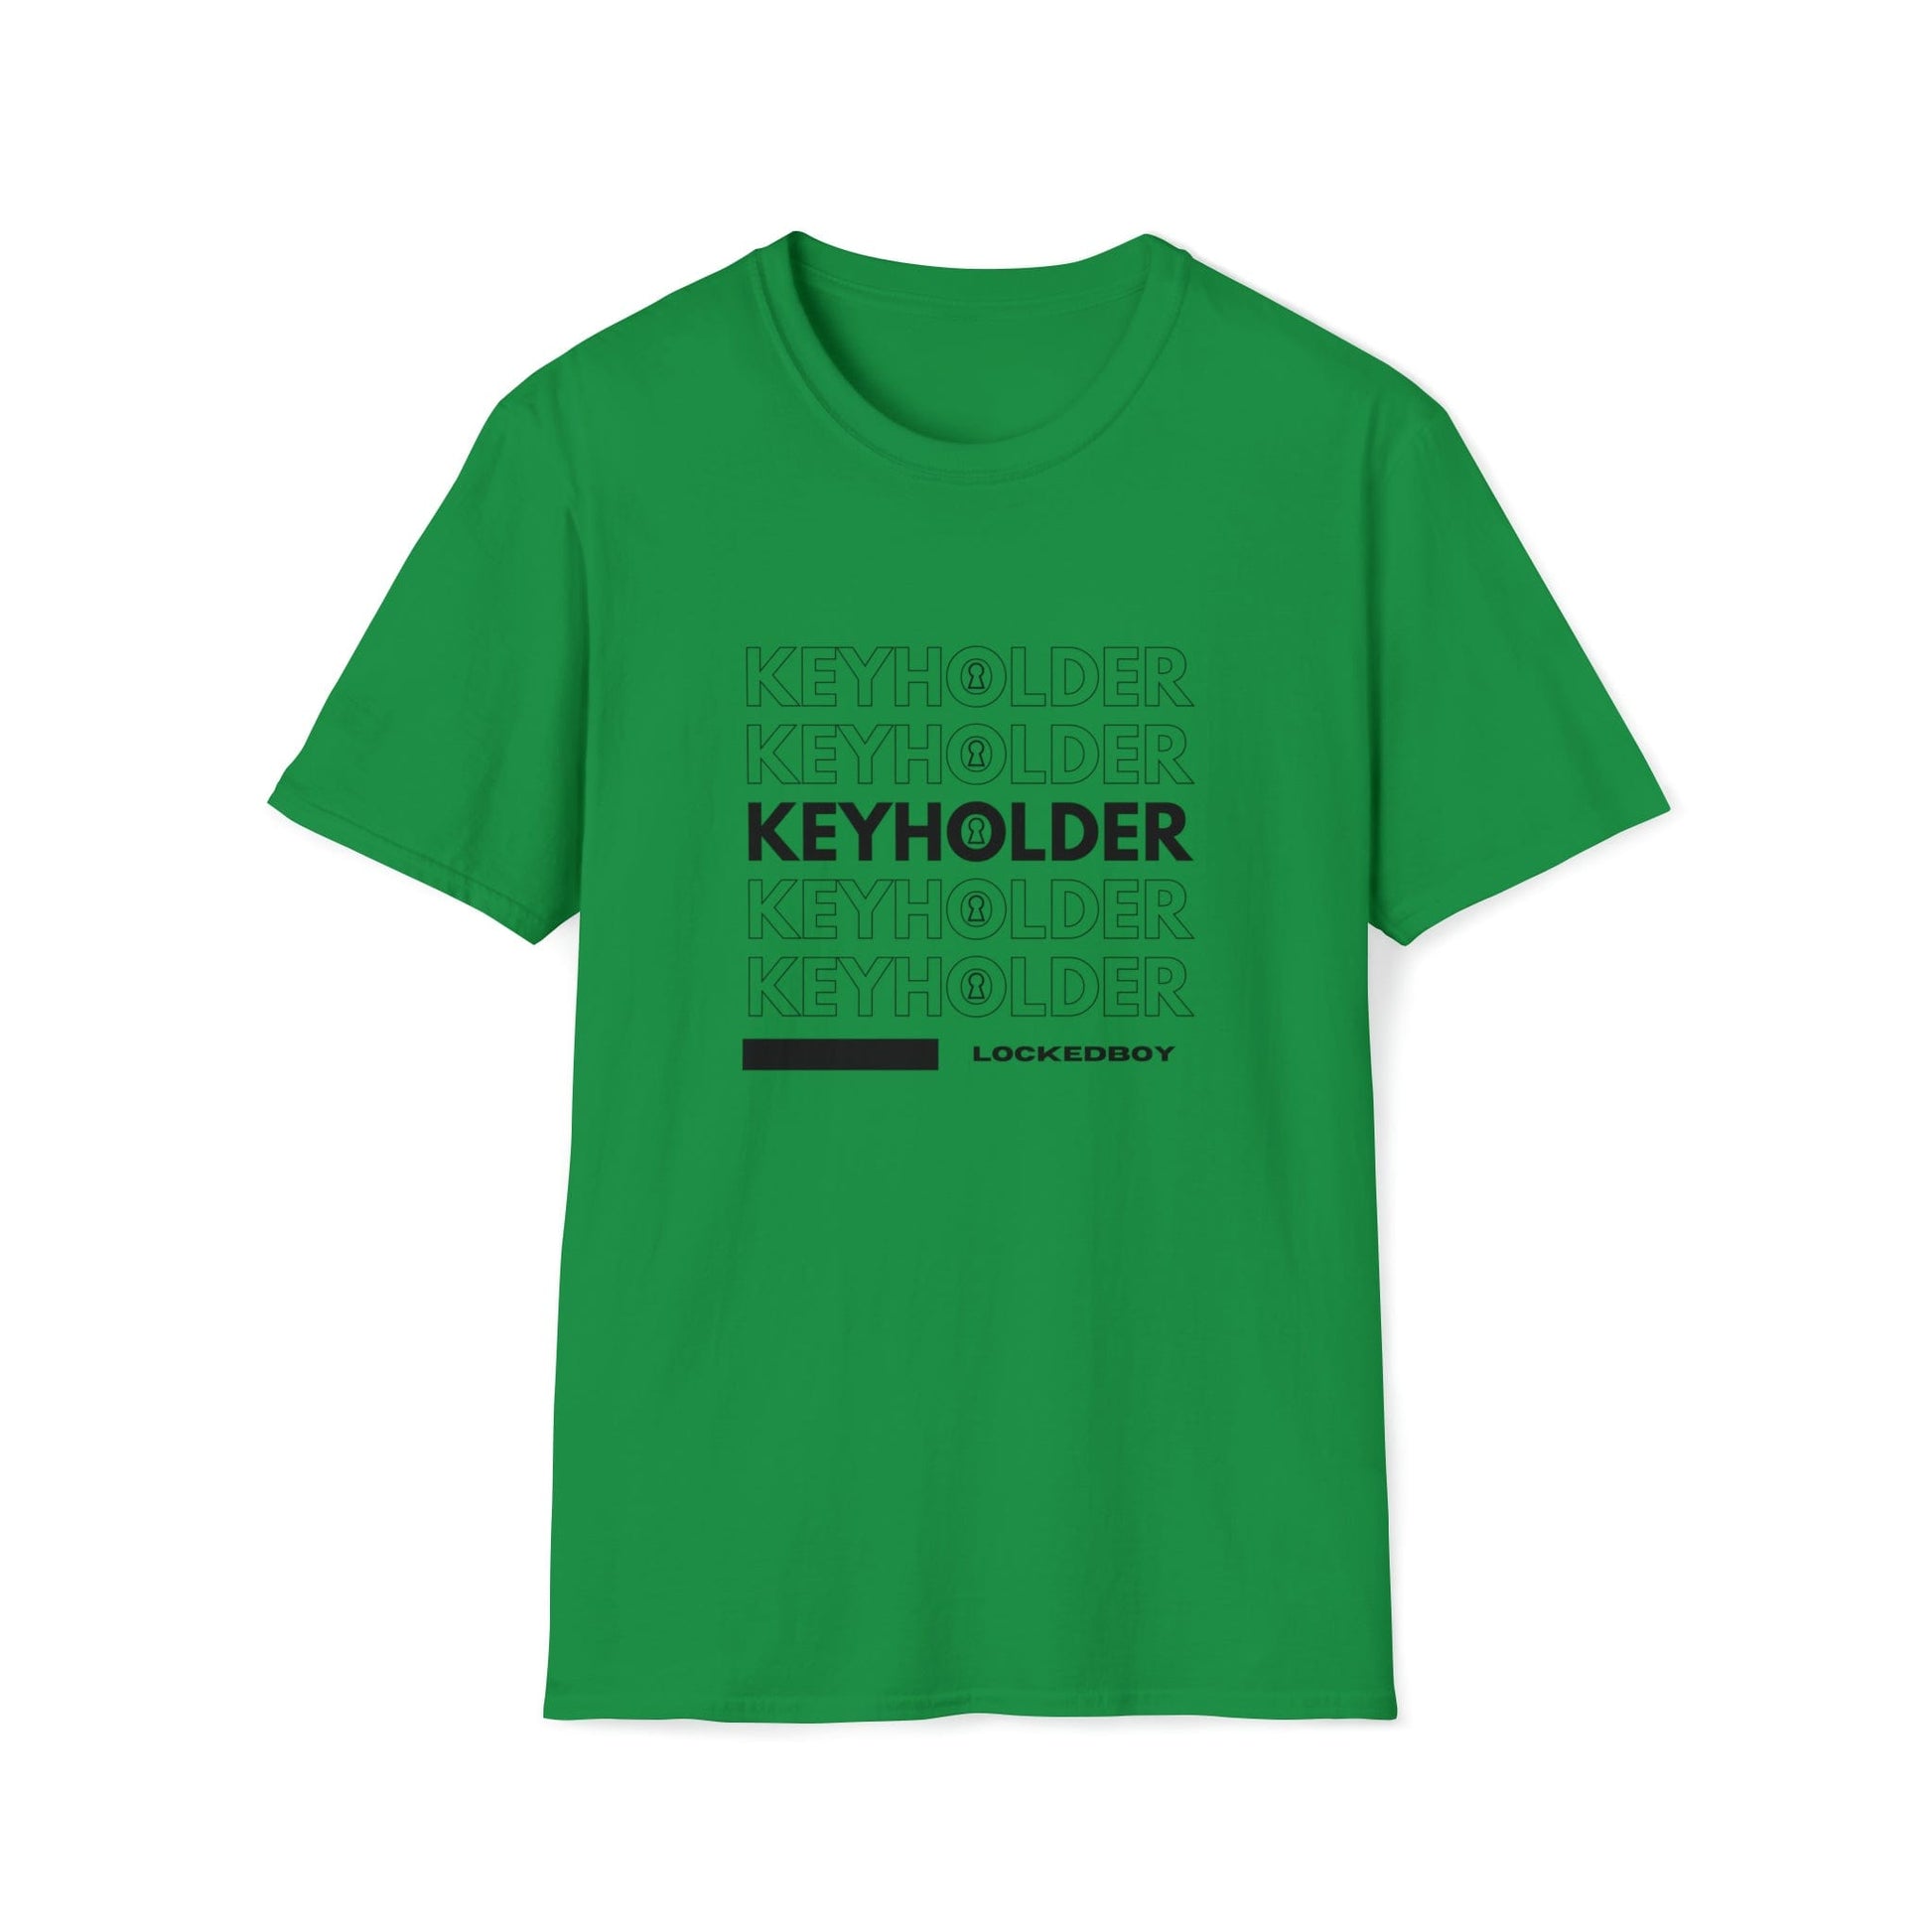 T-Shirt Irish Green / S KEYHOLDER bag Inspo - Chastity Shirts by LockedBoy Athletics LEATHERDADDY BATOR